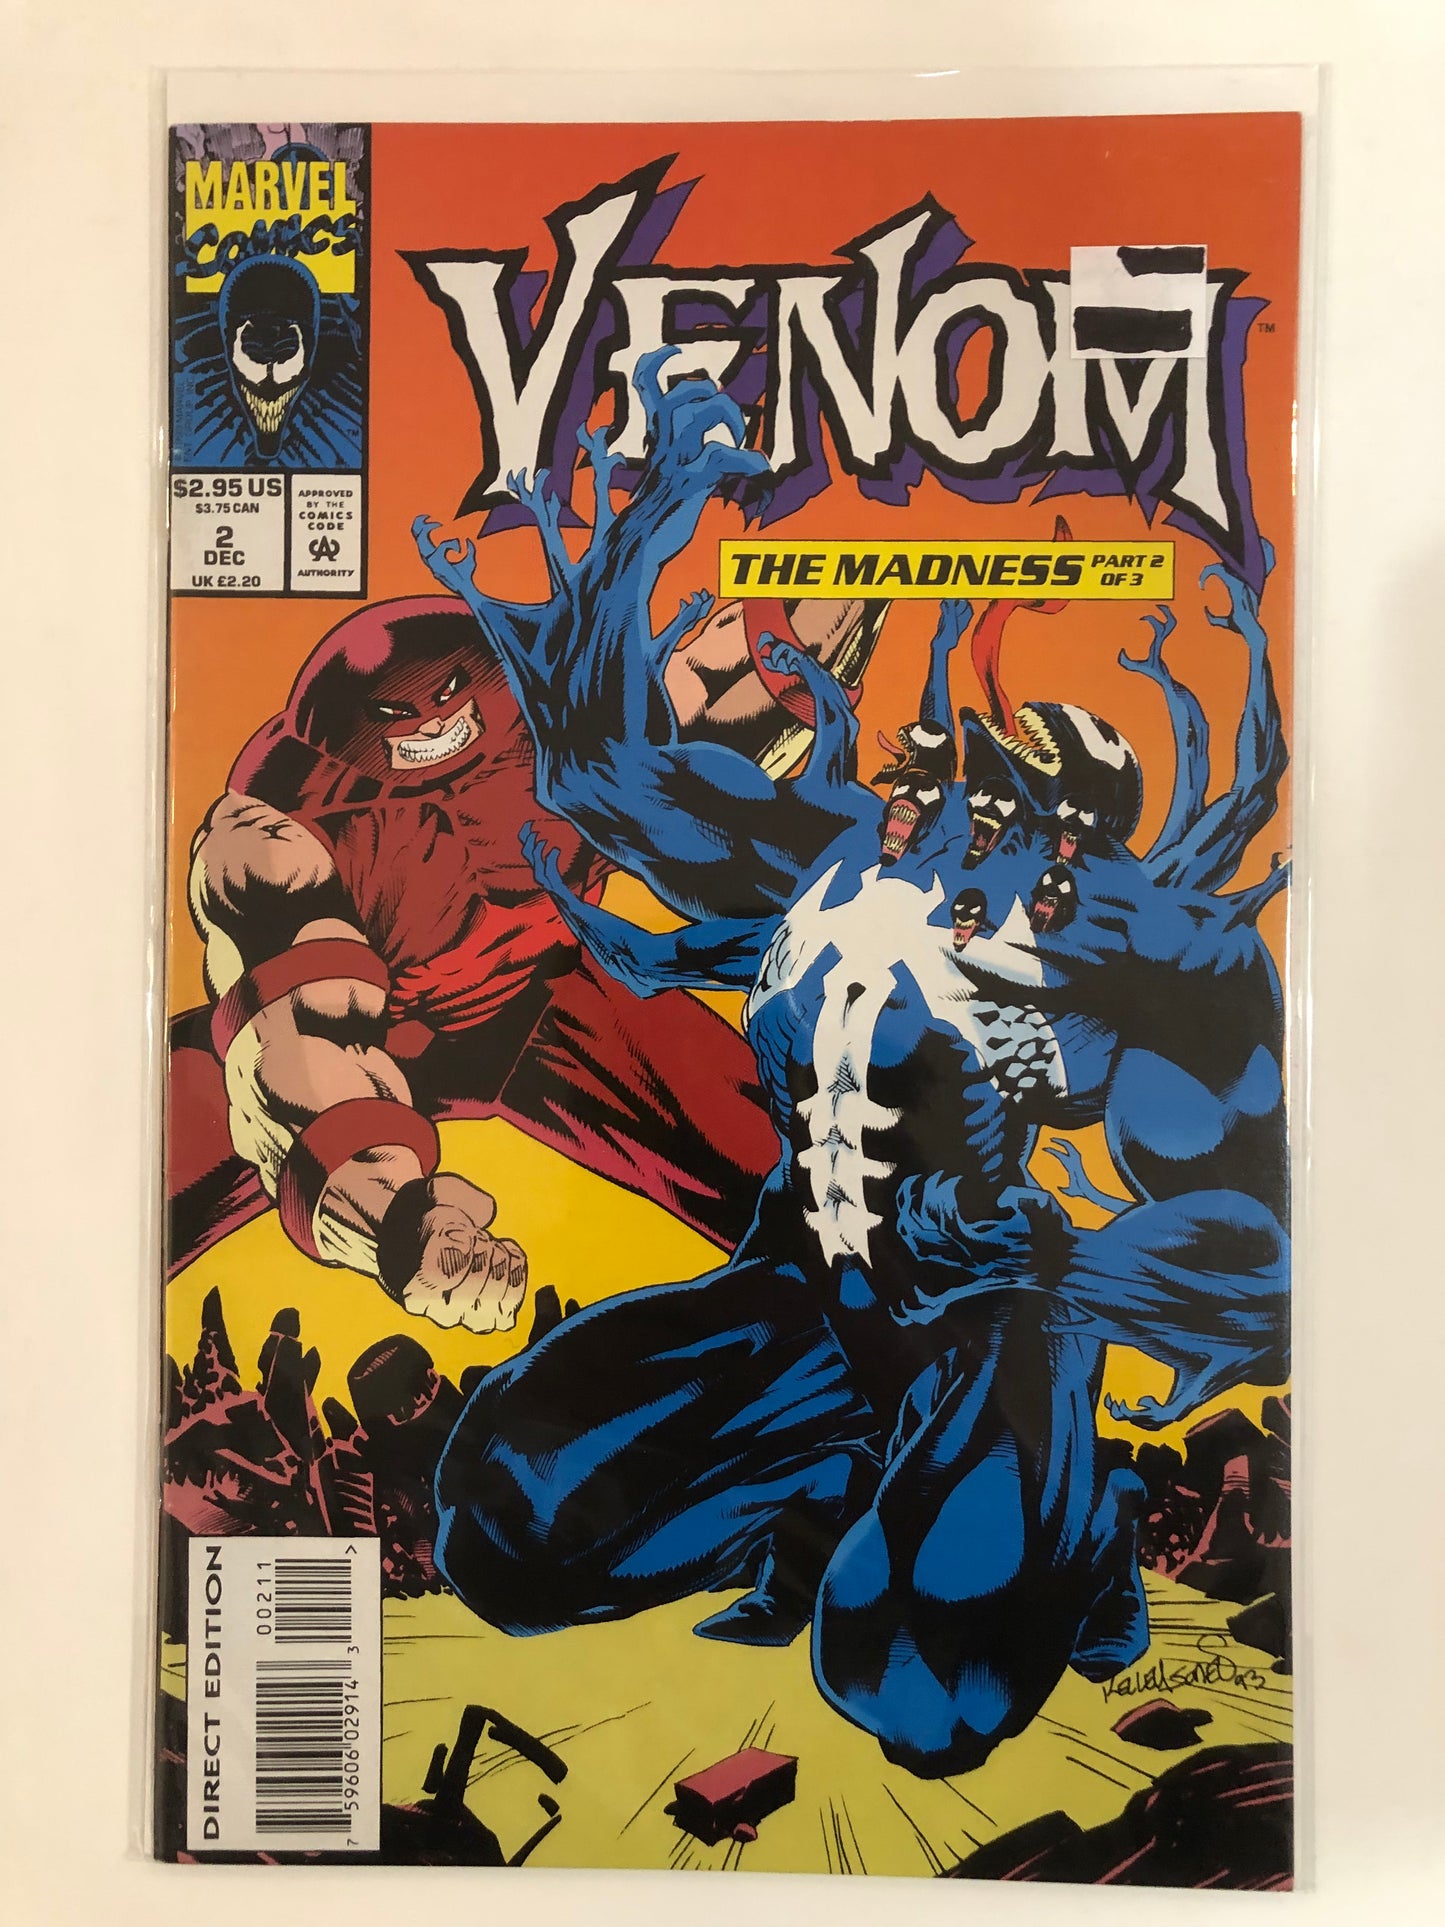 Venom: The Madness set